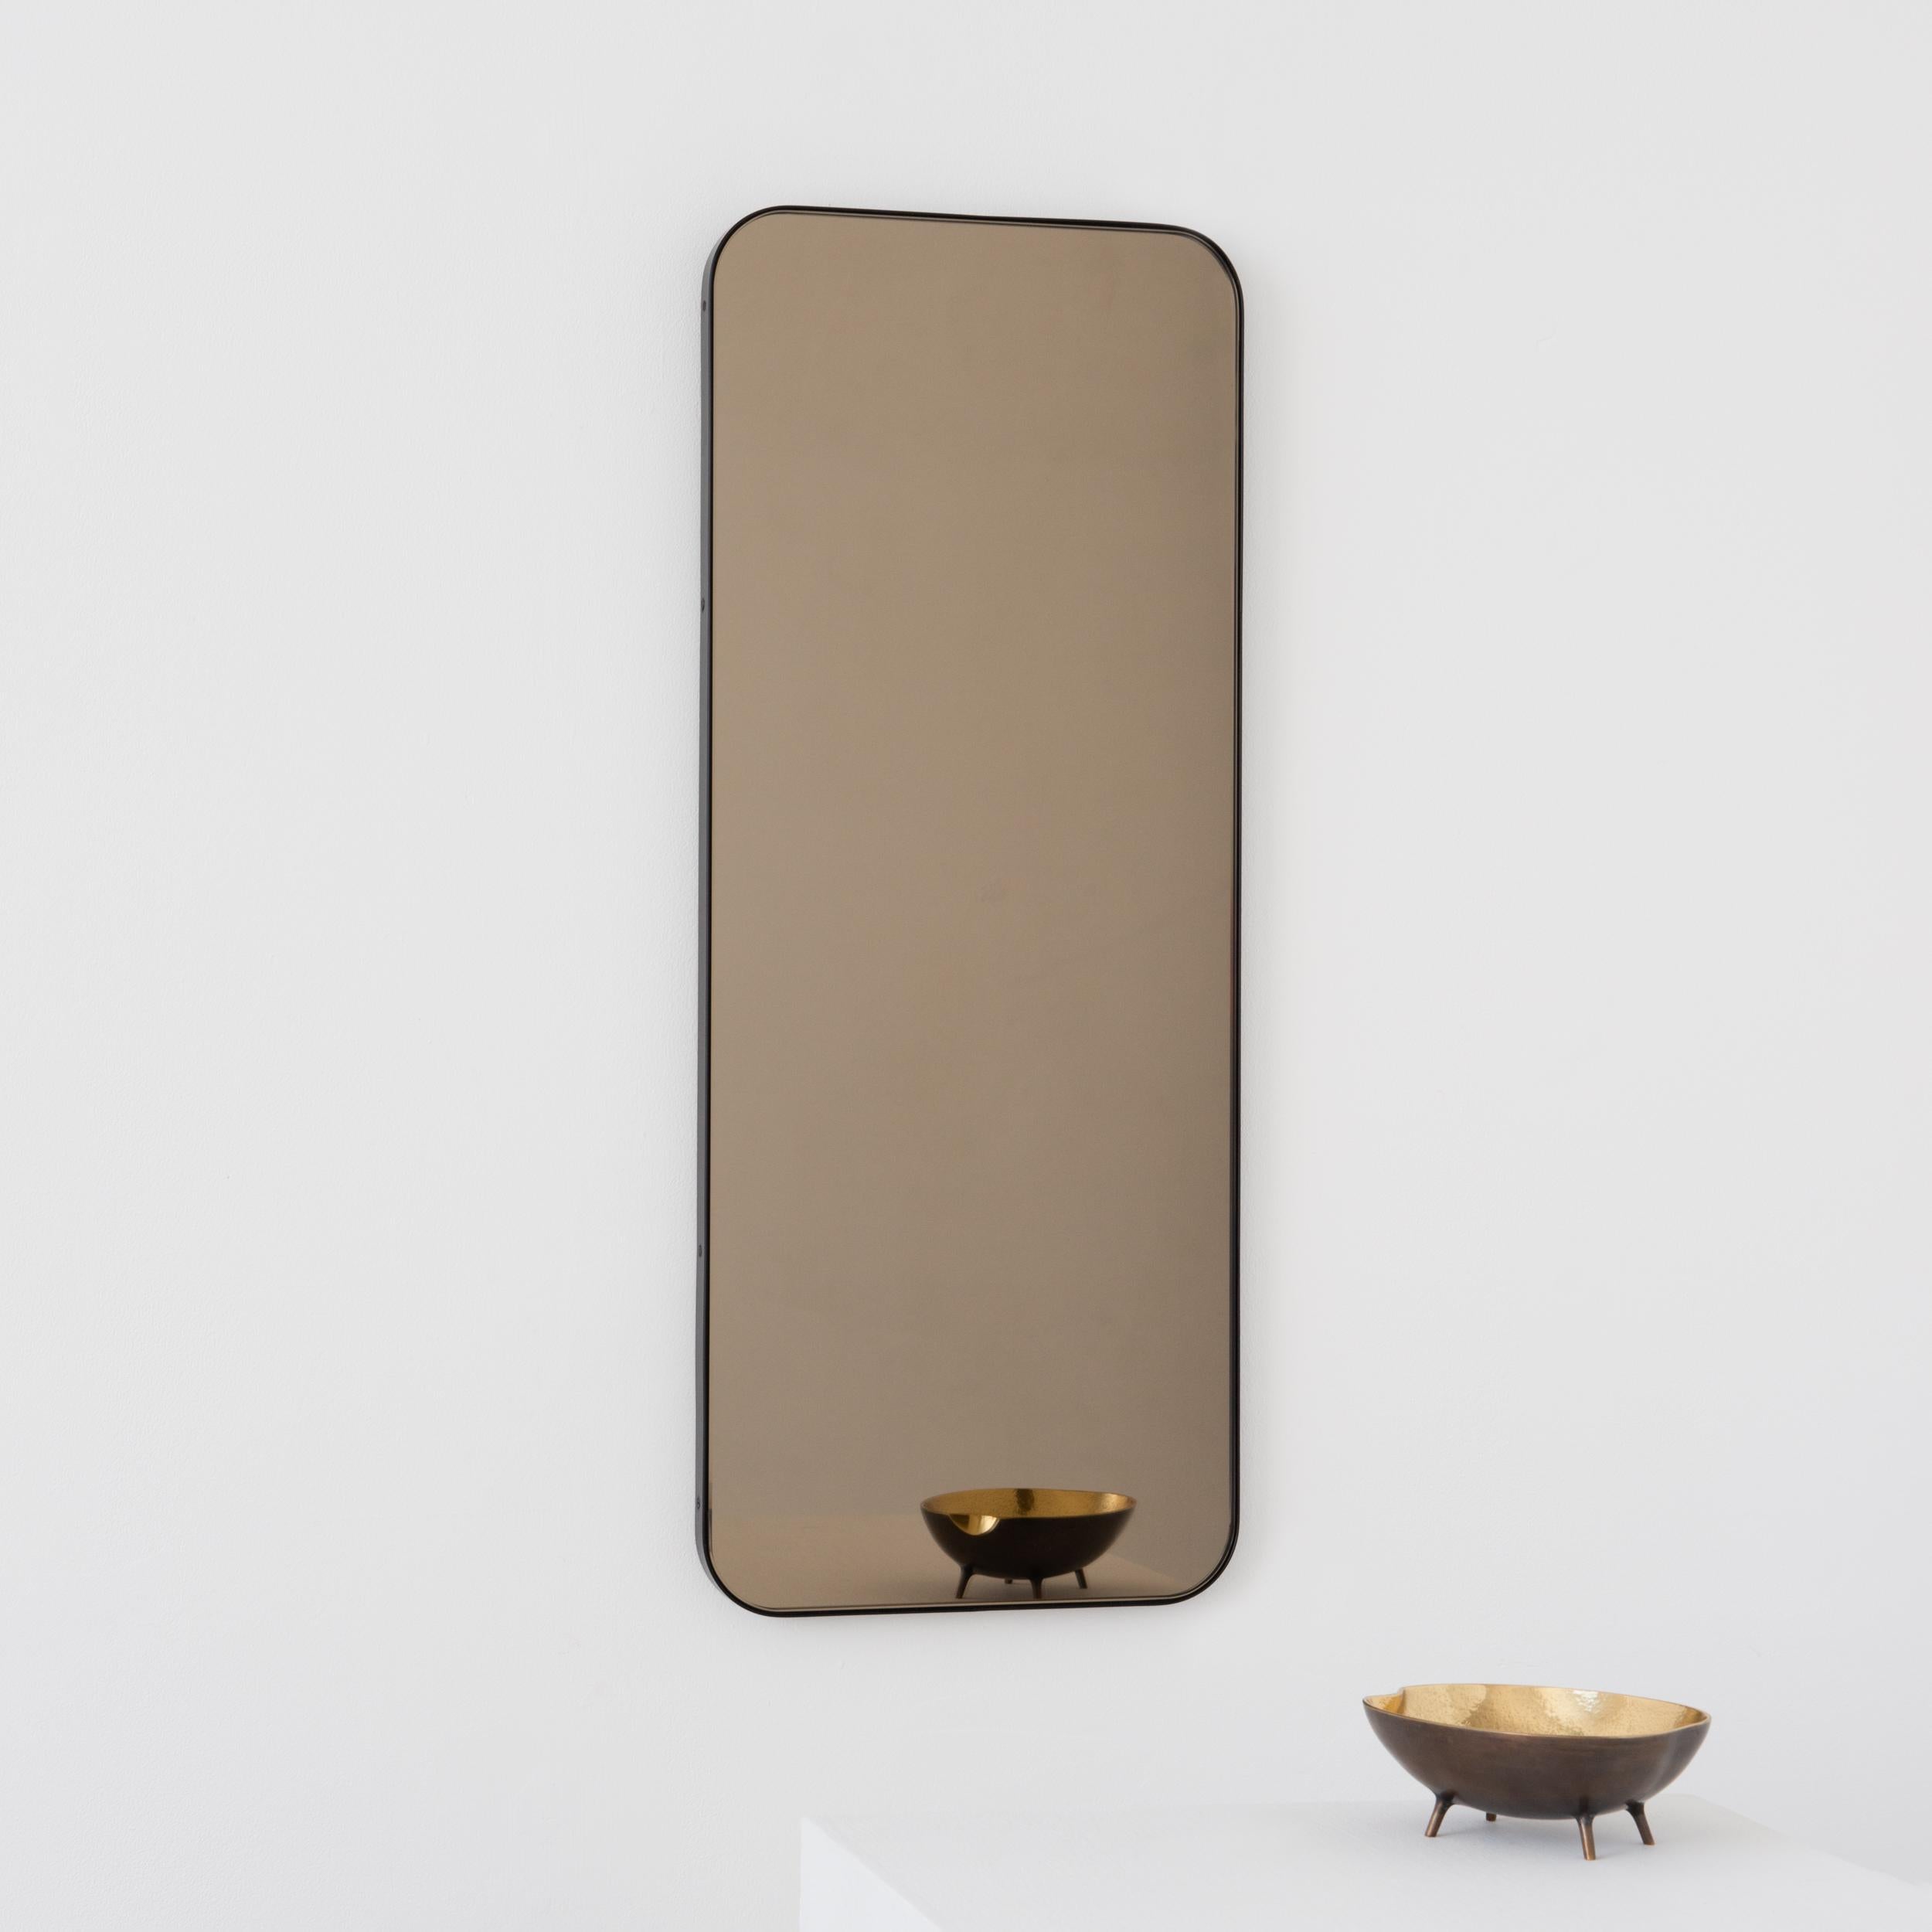 Miroir rectangulaire moderne avec un élégant cadre en laiton massif patiné bronze. Une partie de la charmante collection Quadris, conçue et fabriquée à la main à Londres, au Royaume-Uni. 

Fourni avec une barre en z spécialisée pour une installation